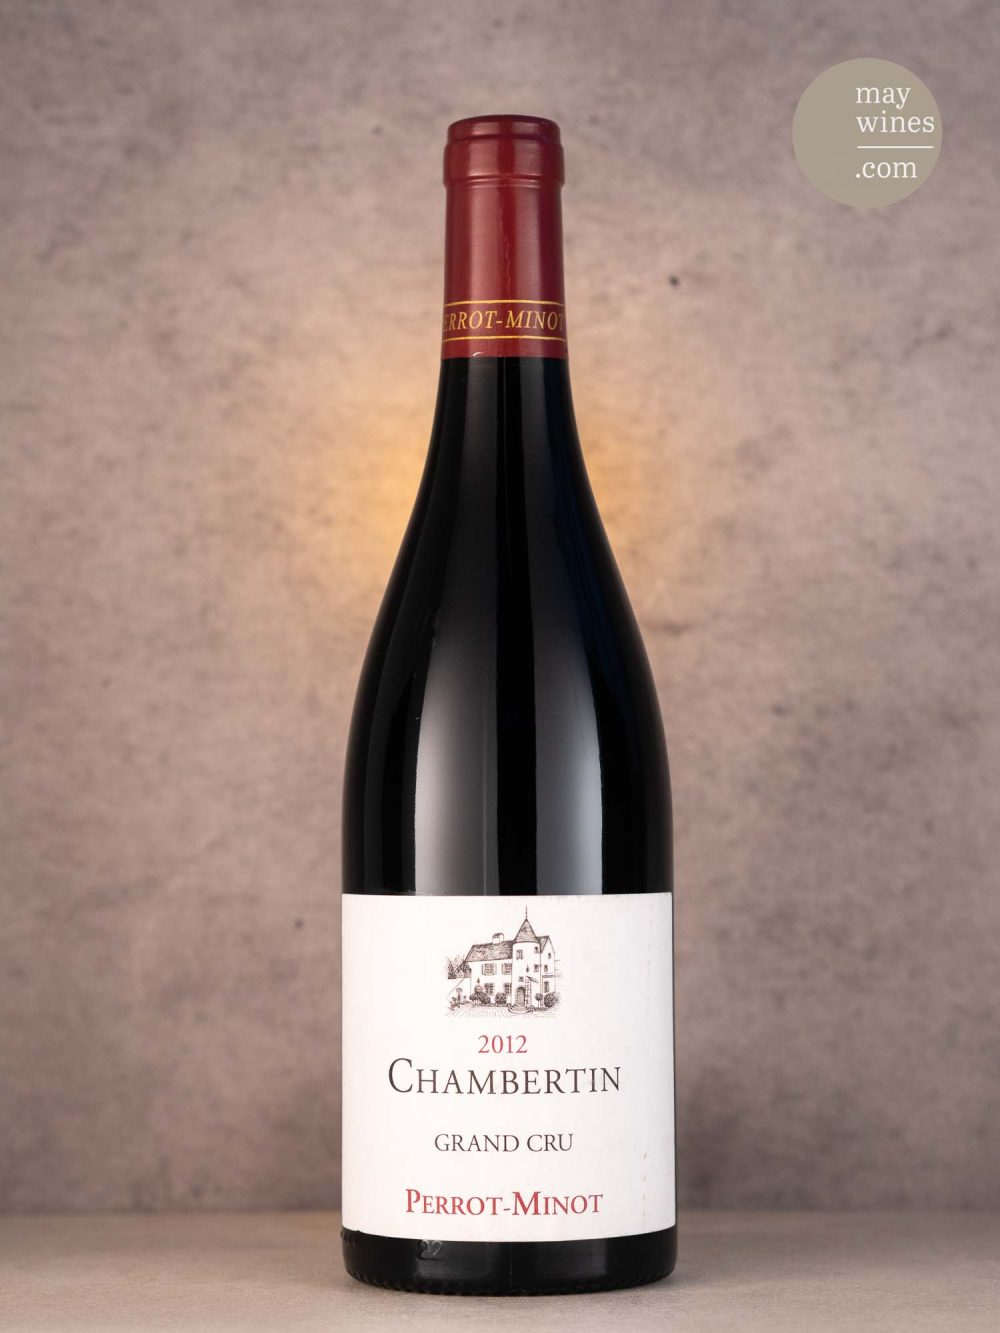 May Wines – Rotwein – 2012 Chambertin V. V. Grand Cru - Domaine Perrot-Minot